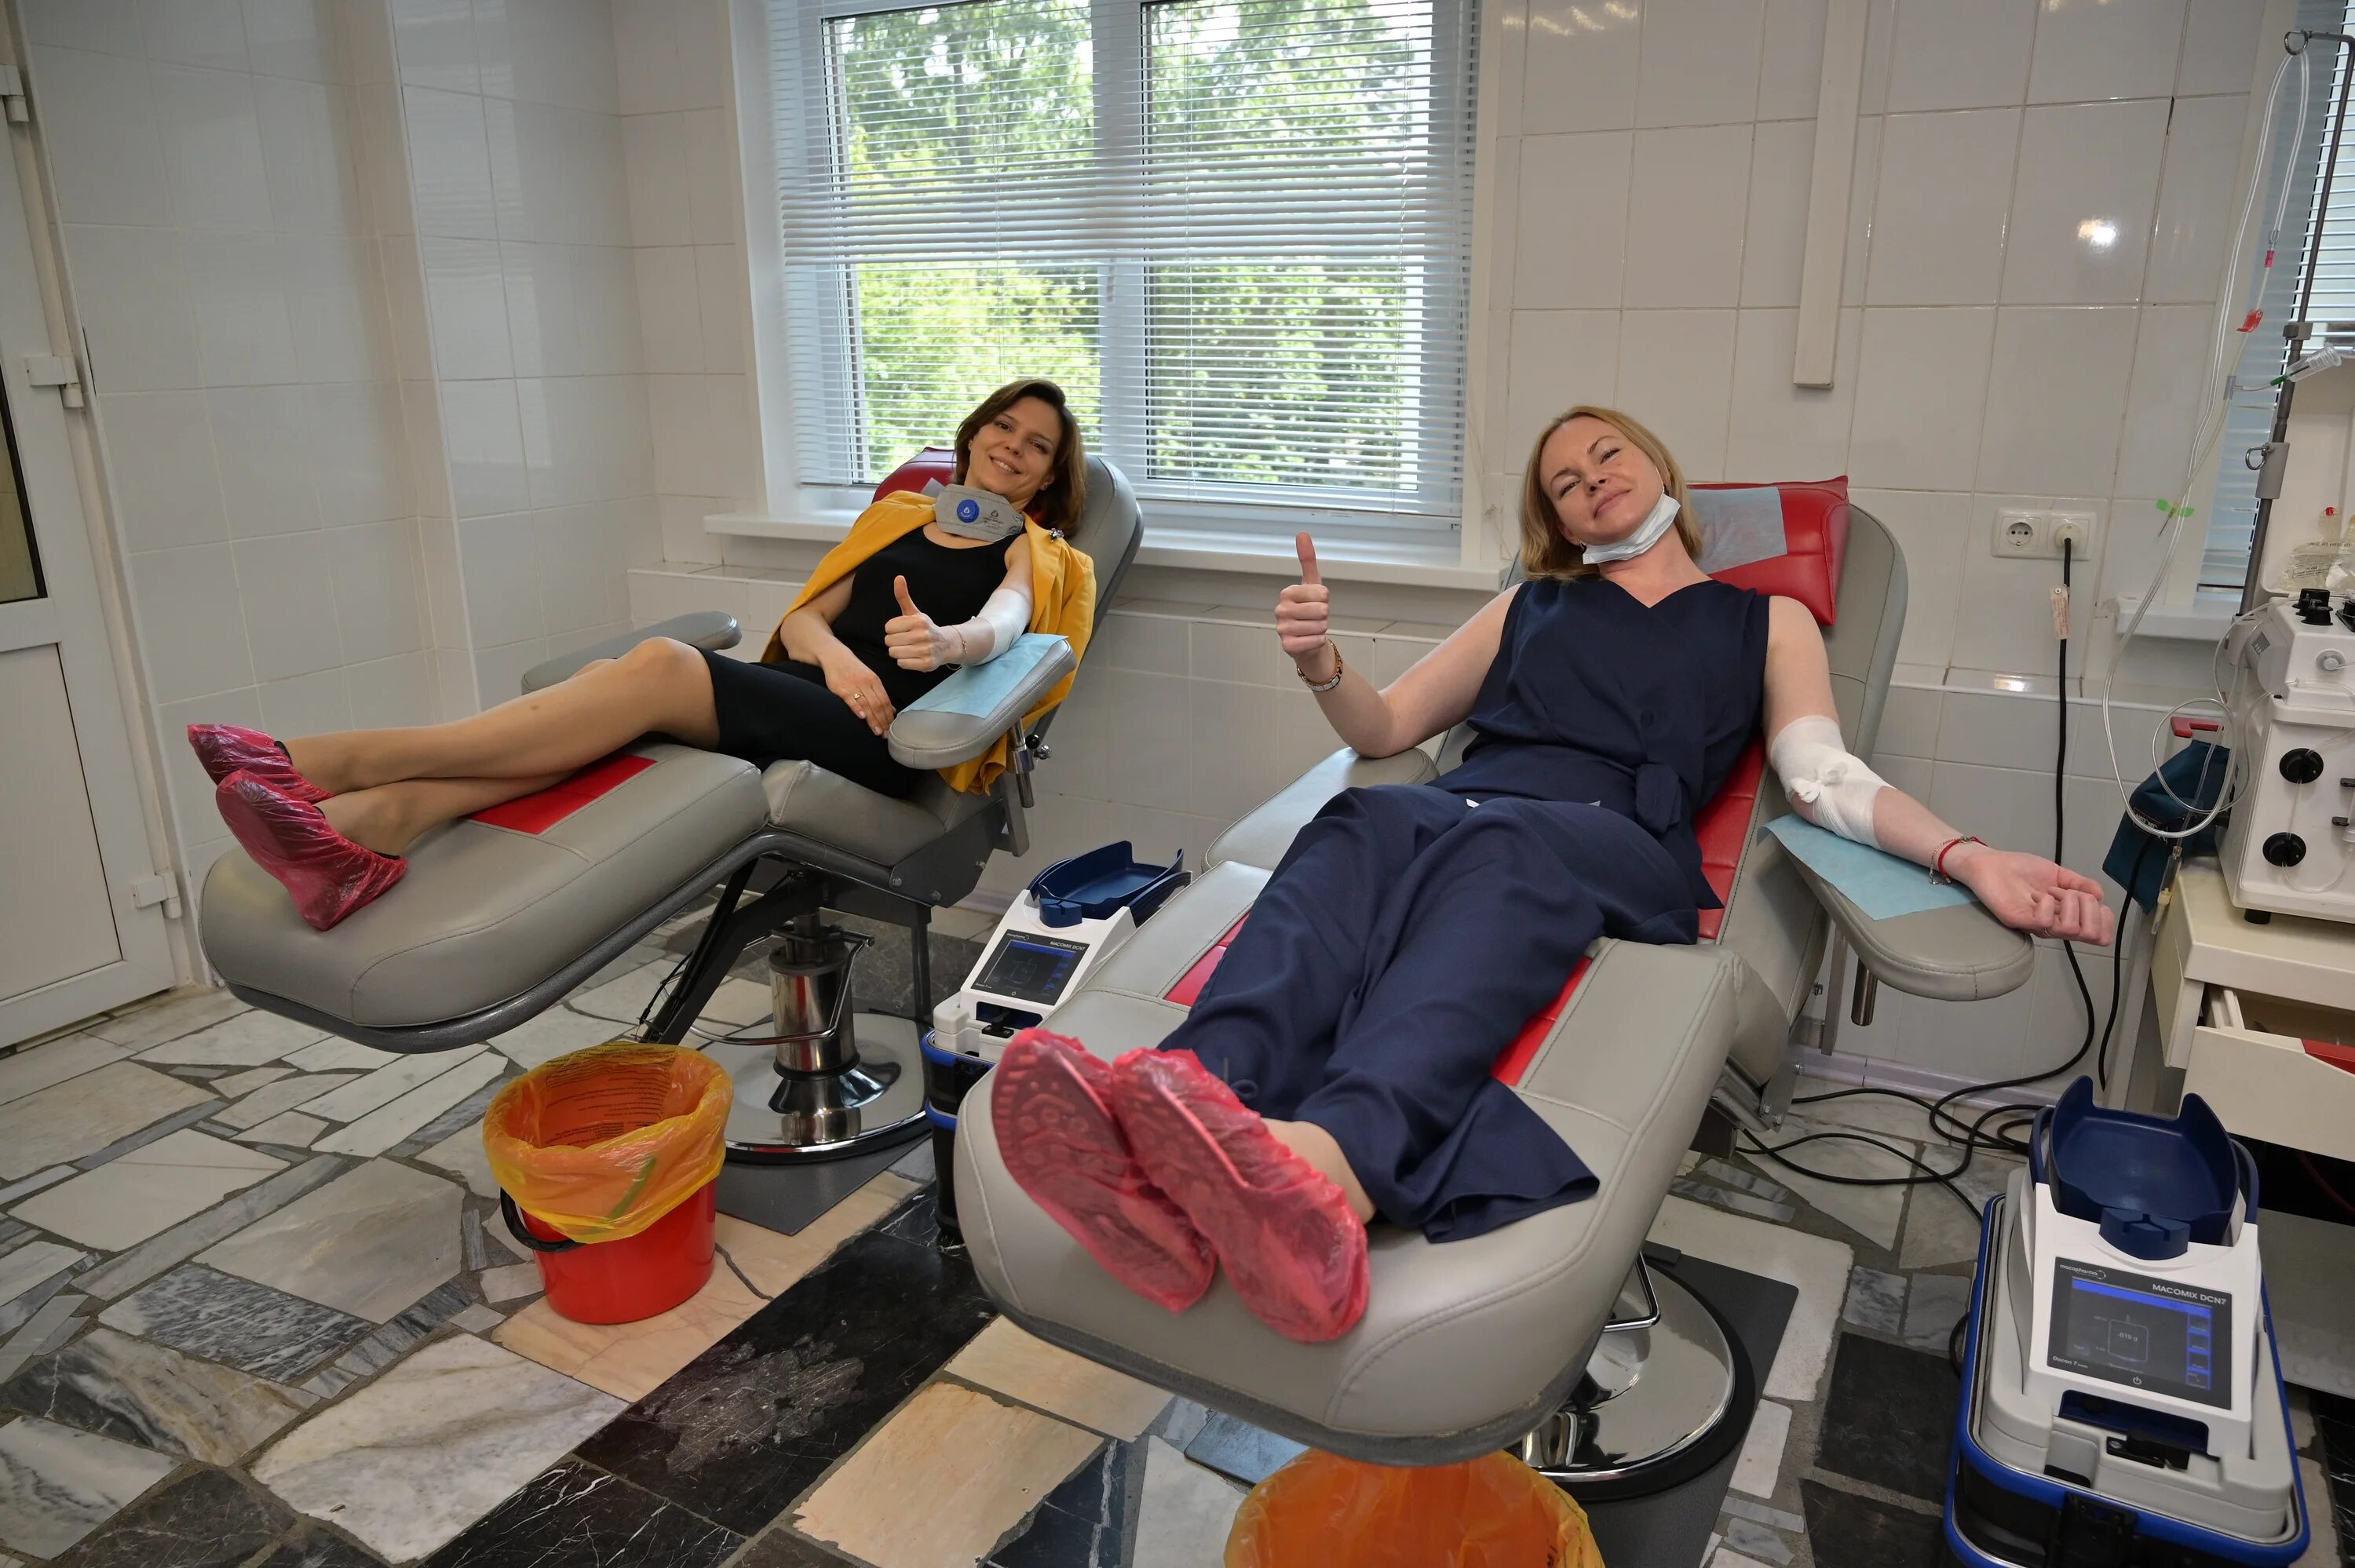 Донорство царицыно. Центр крови станция переливания крови ФМБА. Кресло донора. Кресла для сдачи крови для донорства.